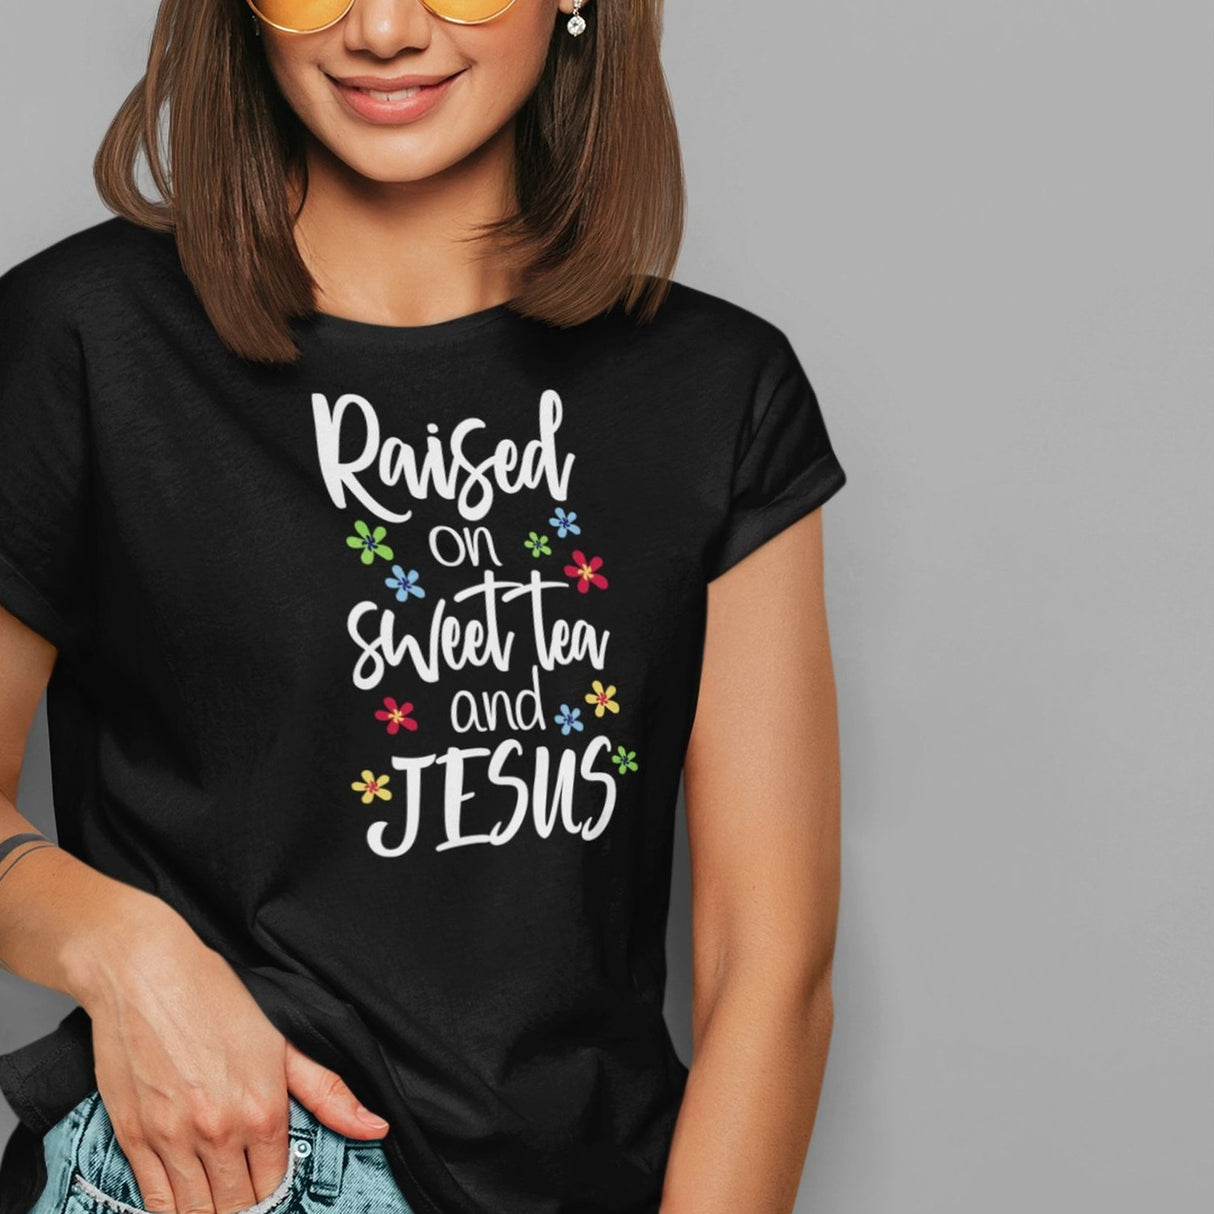 raised-on-sweet-tea-and-jesus-jesus-tee-sweet-tea-t-shirt-christian-tee-faith-t-shirt-religion-tee#color_black